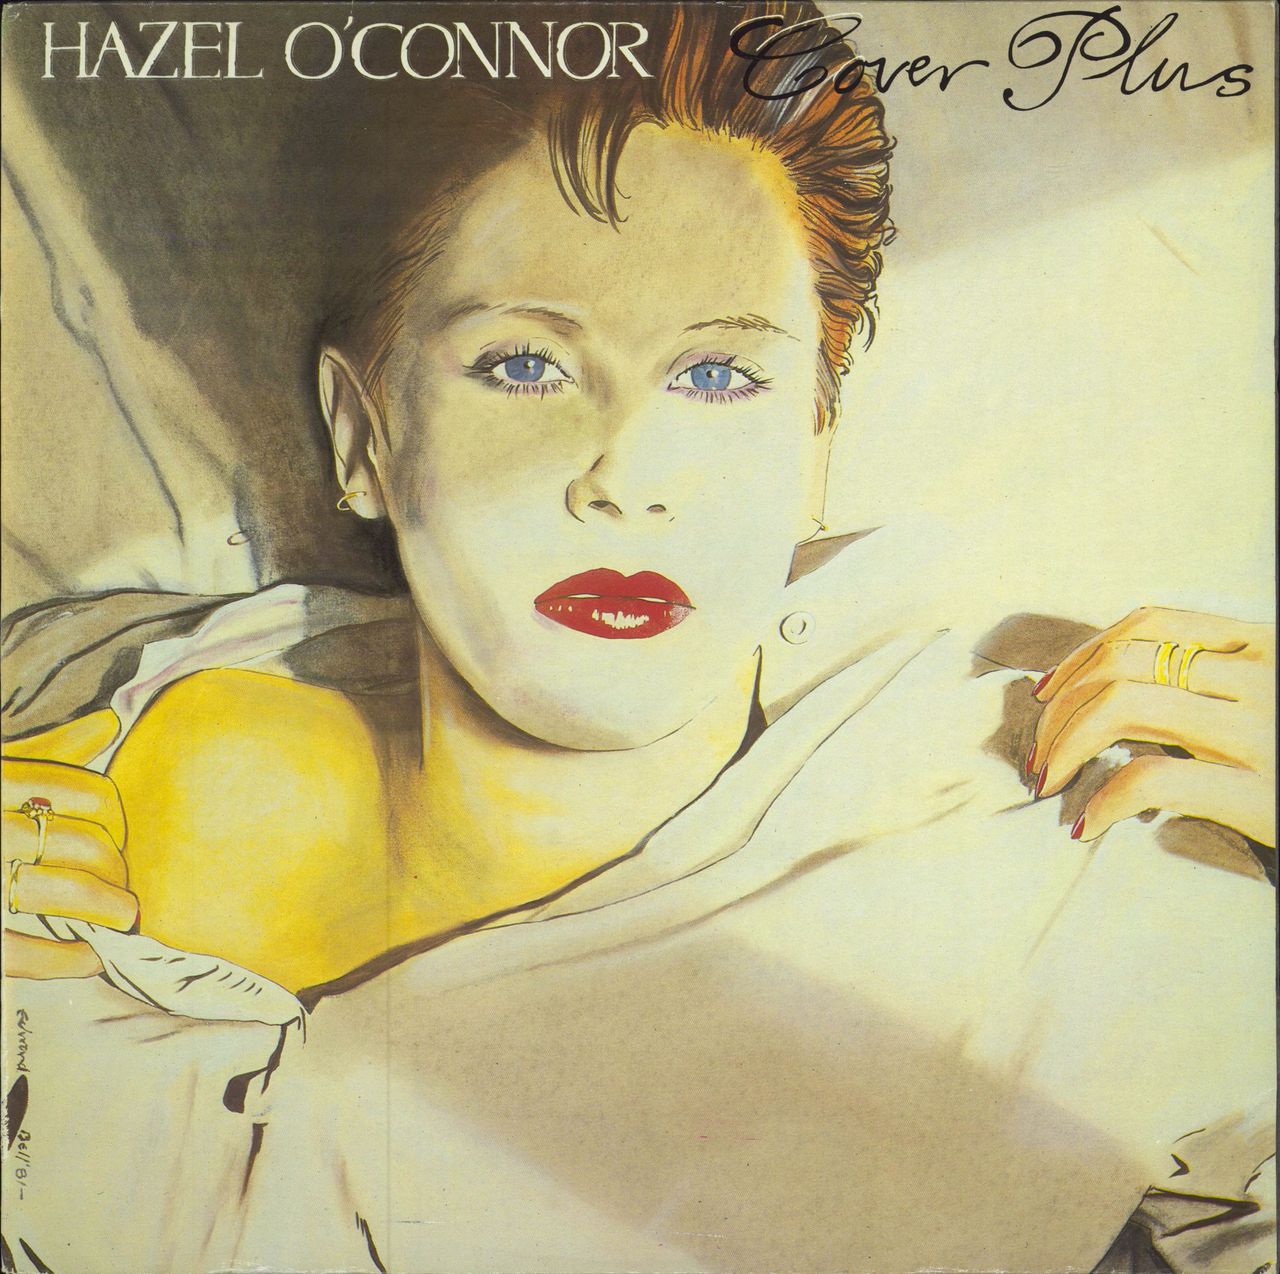 Hazel O'Connor Cover Plus + Artwork Poster + Sticker UK vinyl LP album (LP record) ALB108